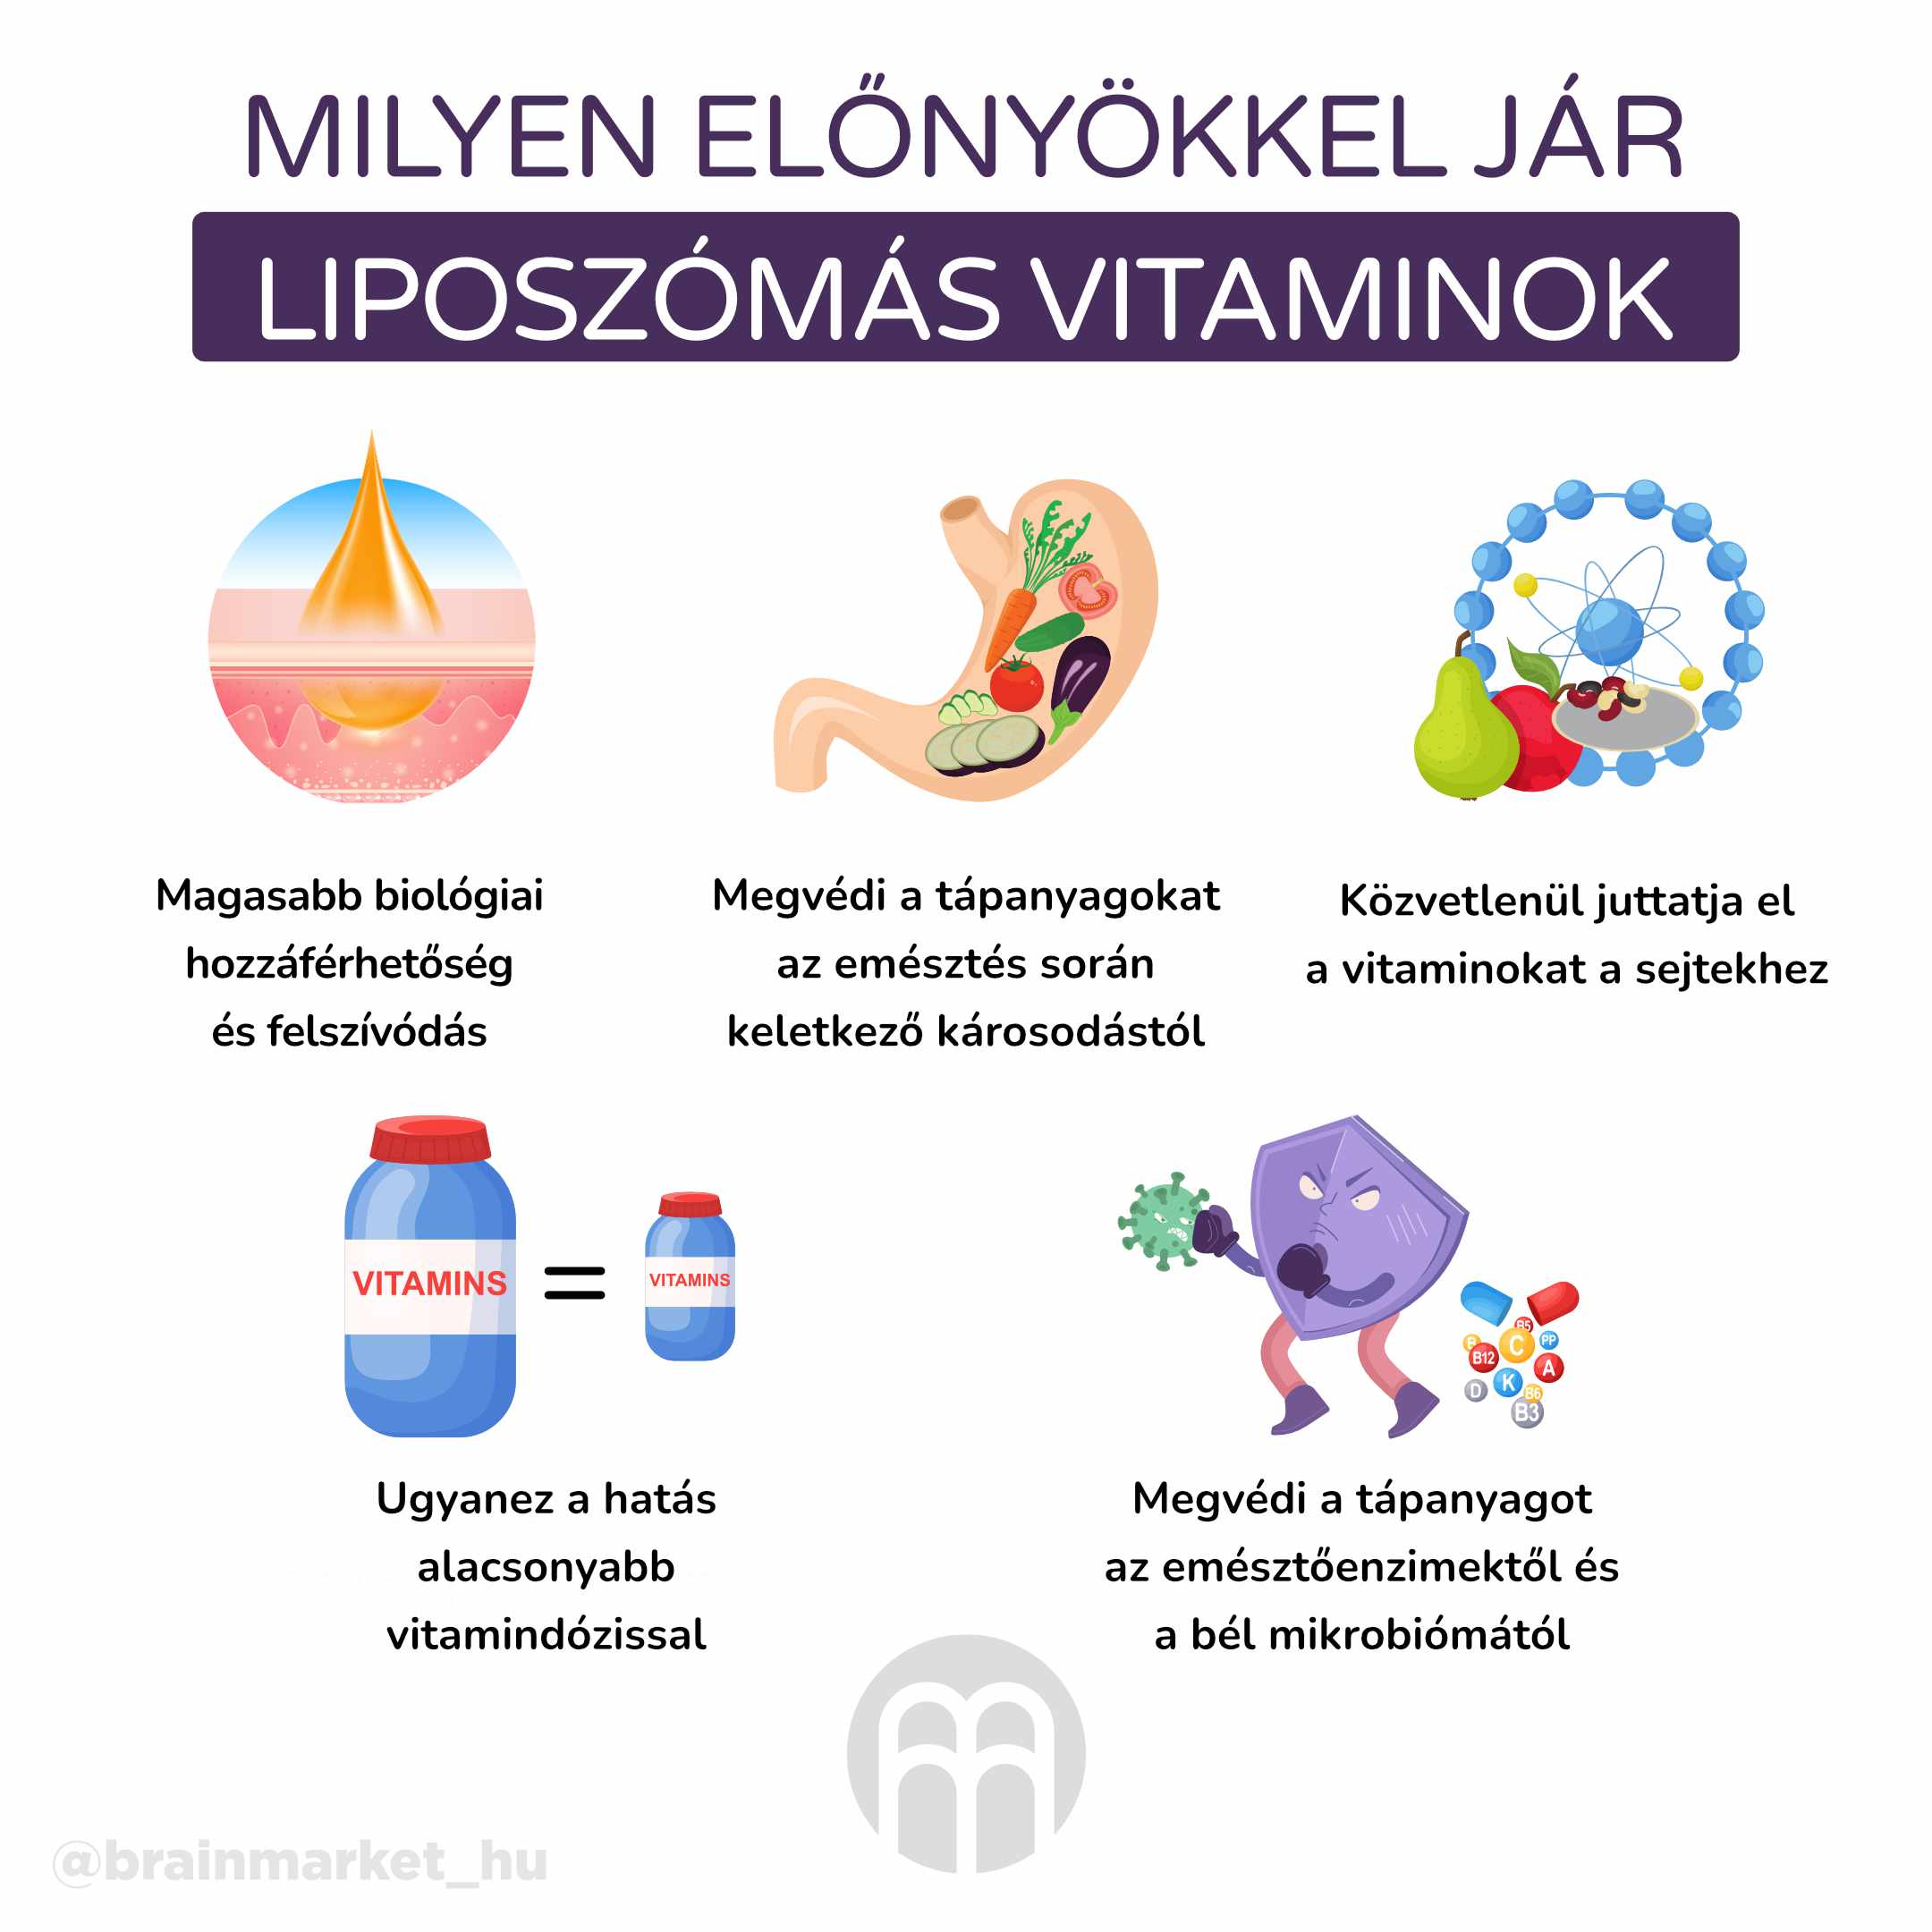 jake_jsou_vyhody_liposomalnich_vitaminu_infografika_hu